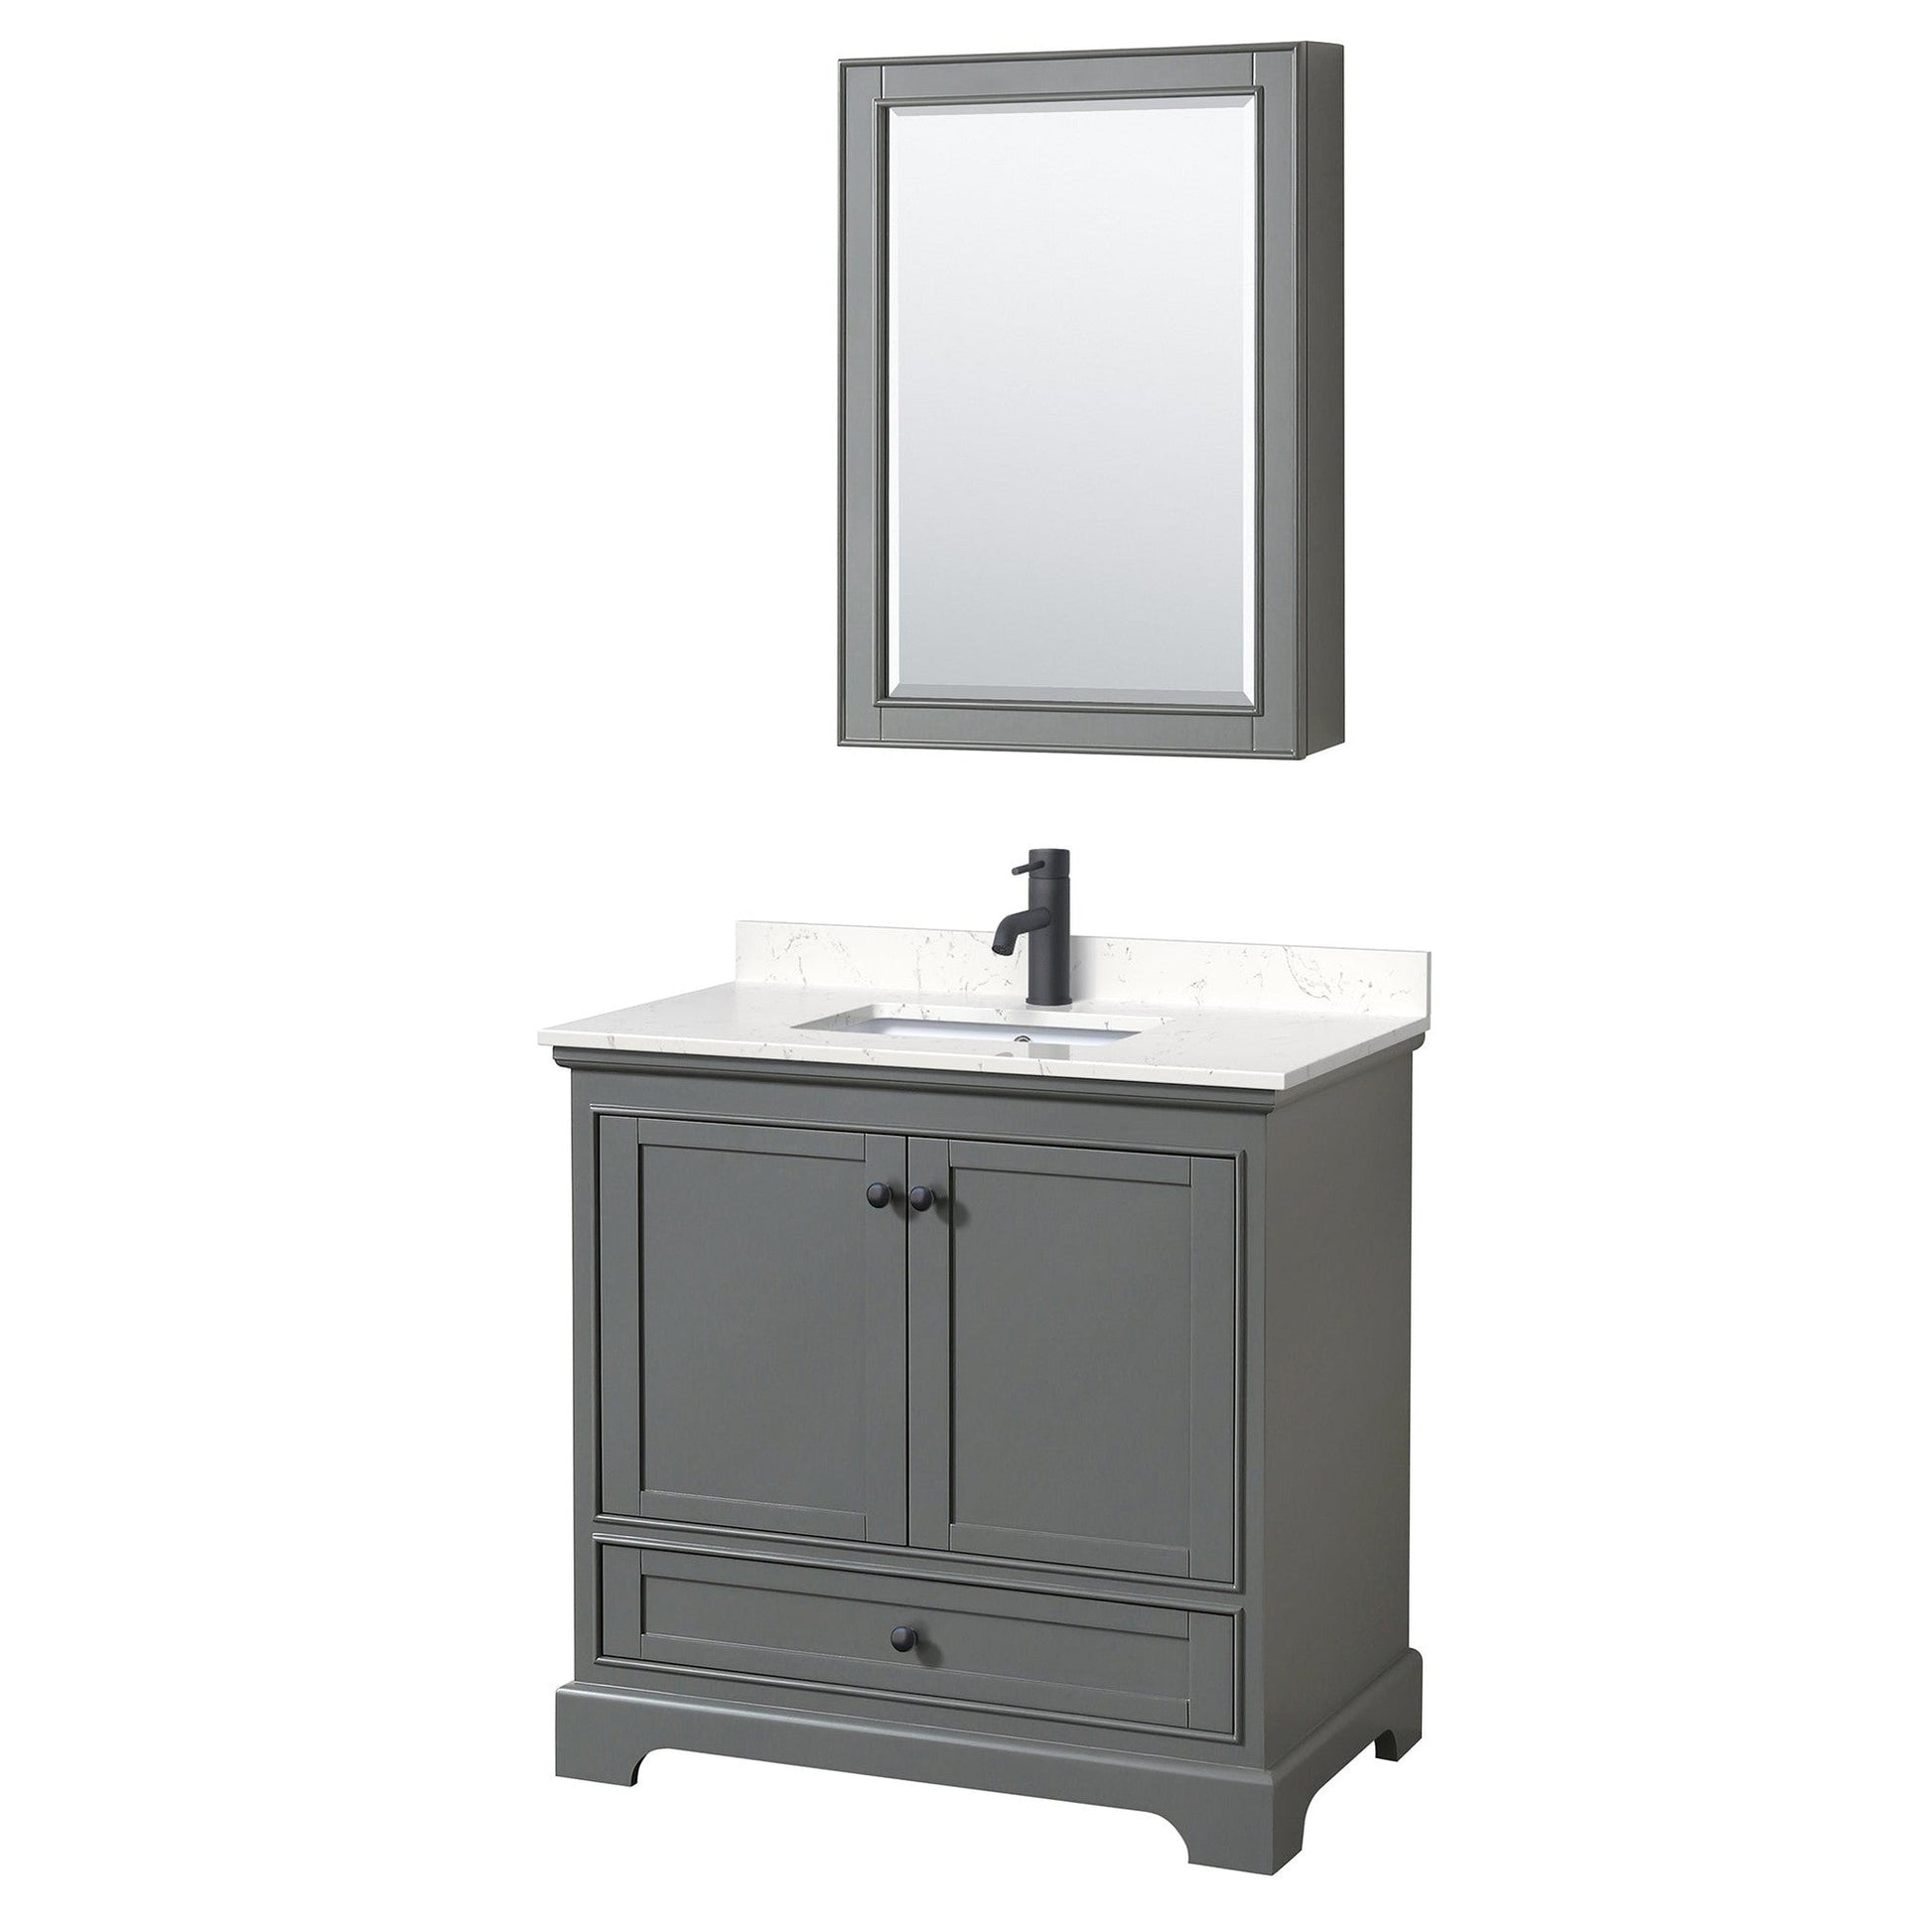 Deborah 36" Single Bathroom Vanity in Dark Gray, Carrara Cultured Marble Countertop, Undermount Square Sink, Matte Black Trim, Medicine Cabinet